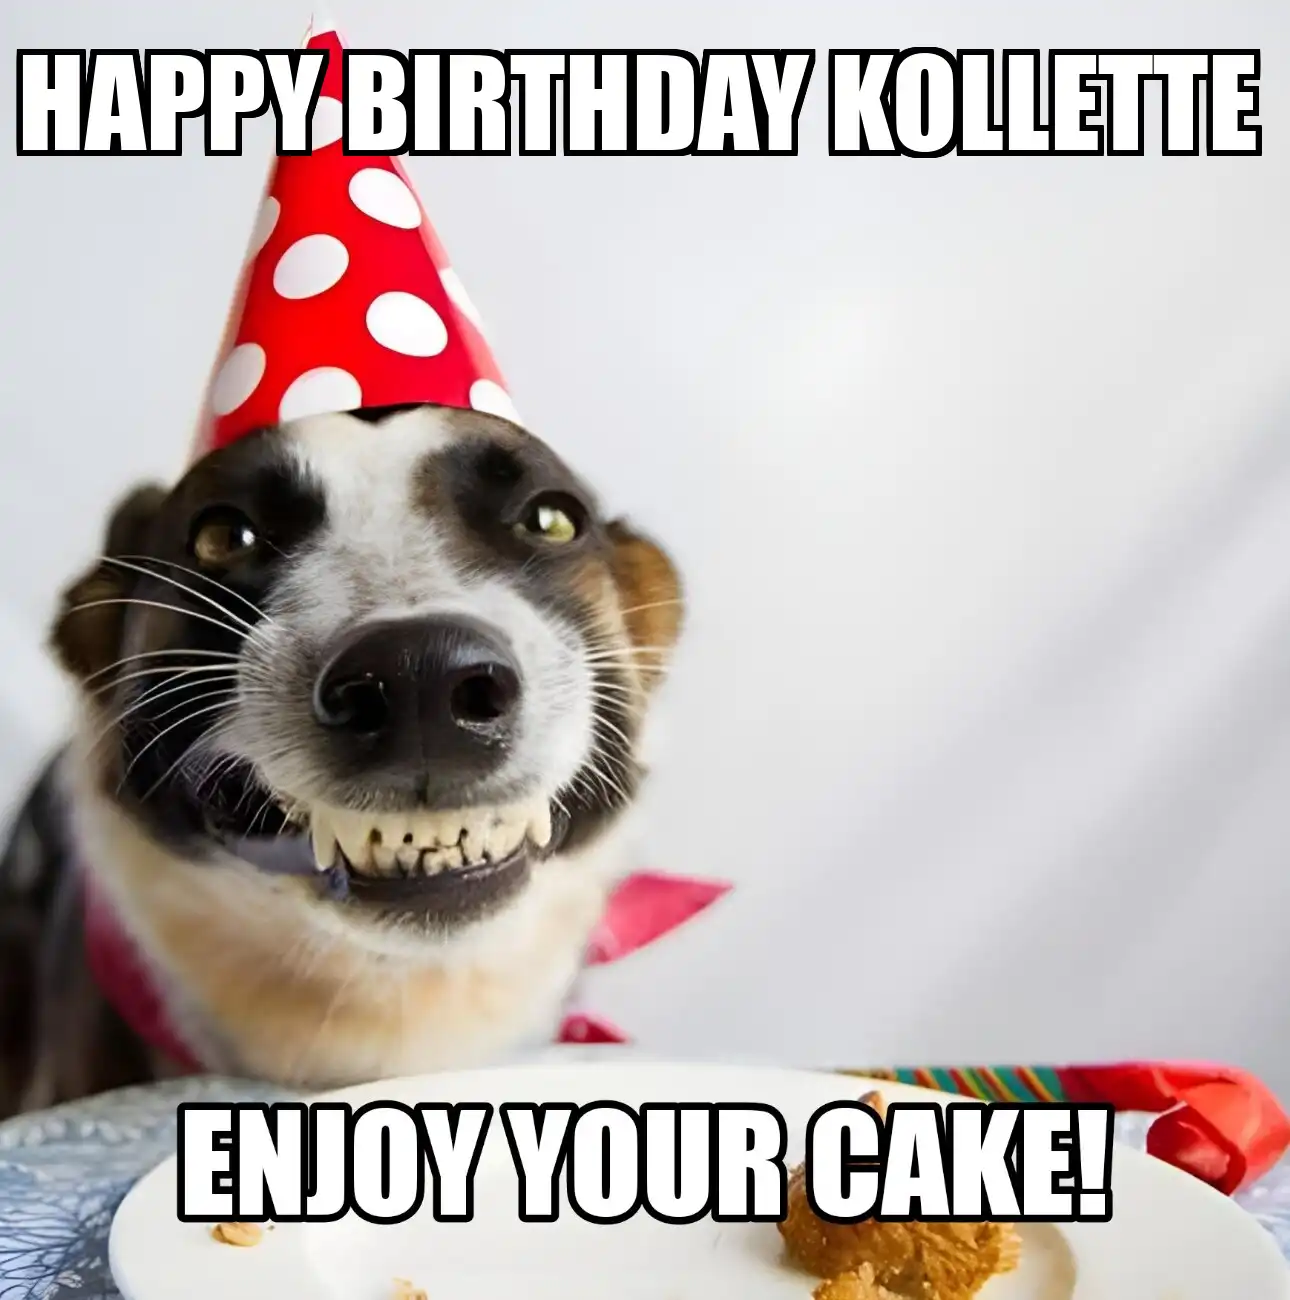 Happy Birthday Kollette Enjoy Your Cake Dog Meme